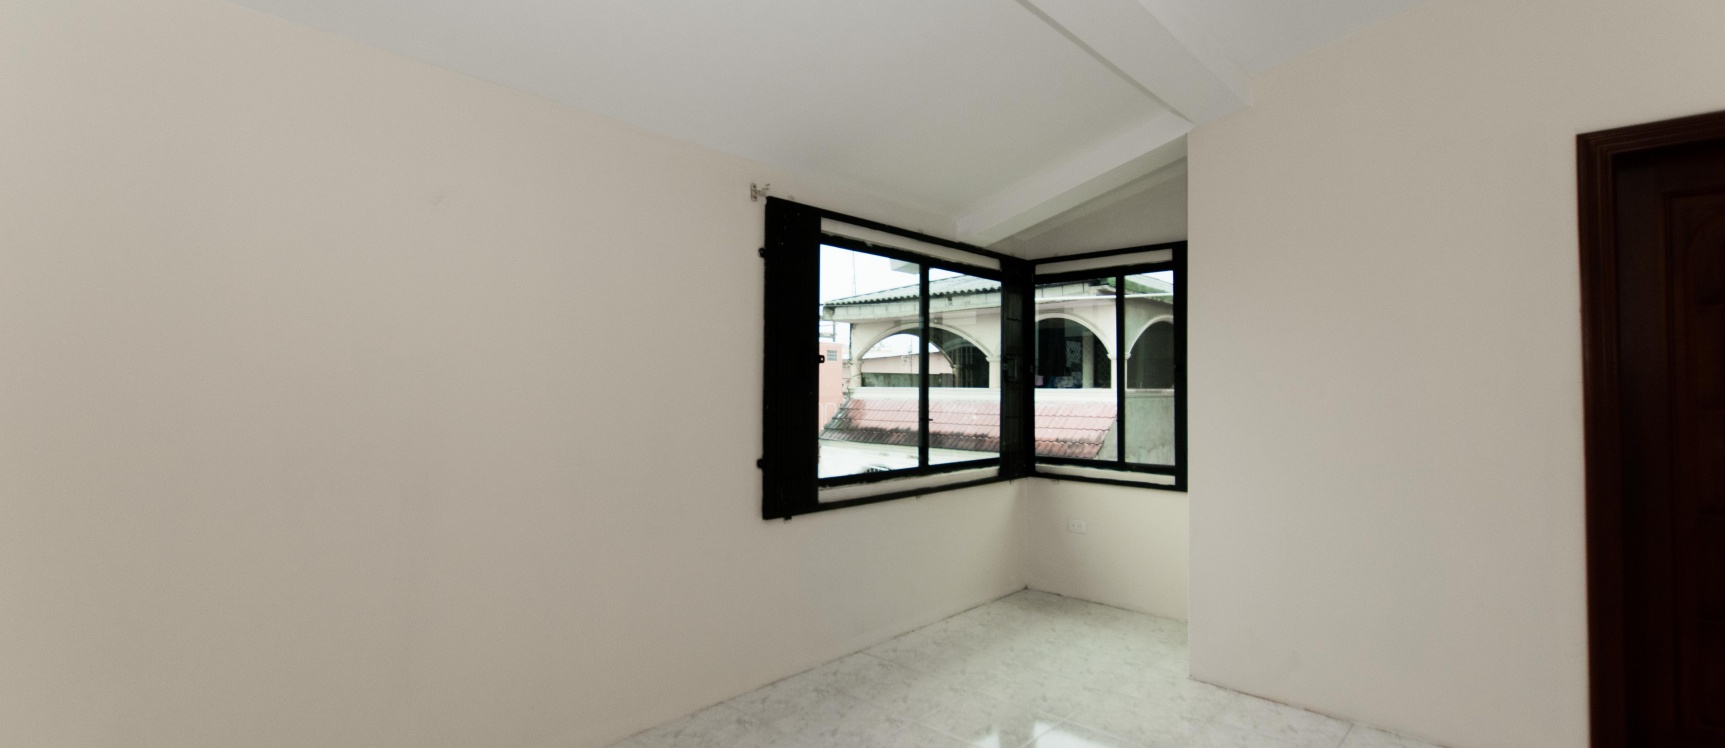 GeoBienes - Casa en venta ubicada en urbanización Acuarela del Rio - Plusvalia Guayaquil Casas de venta y alquiler Inmobiliaria Ecuador